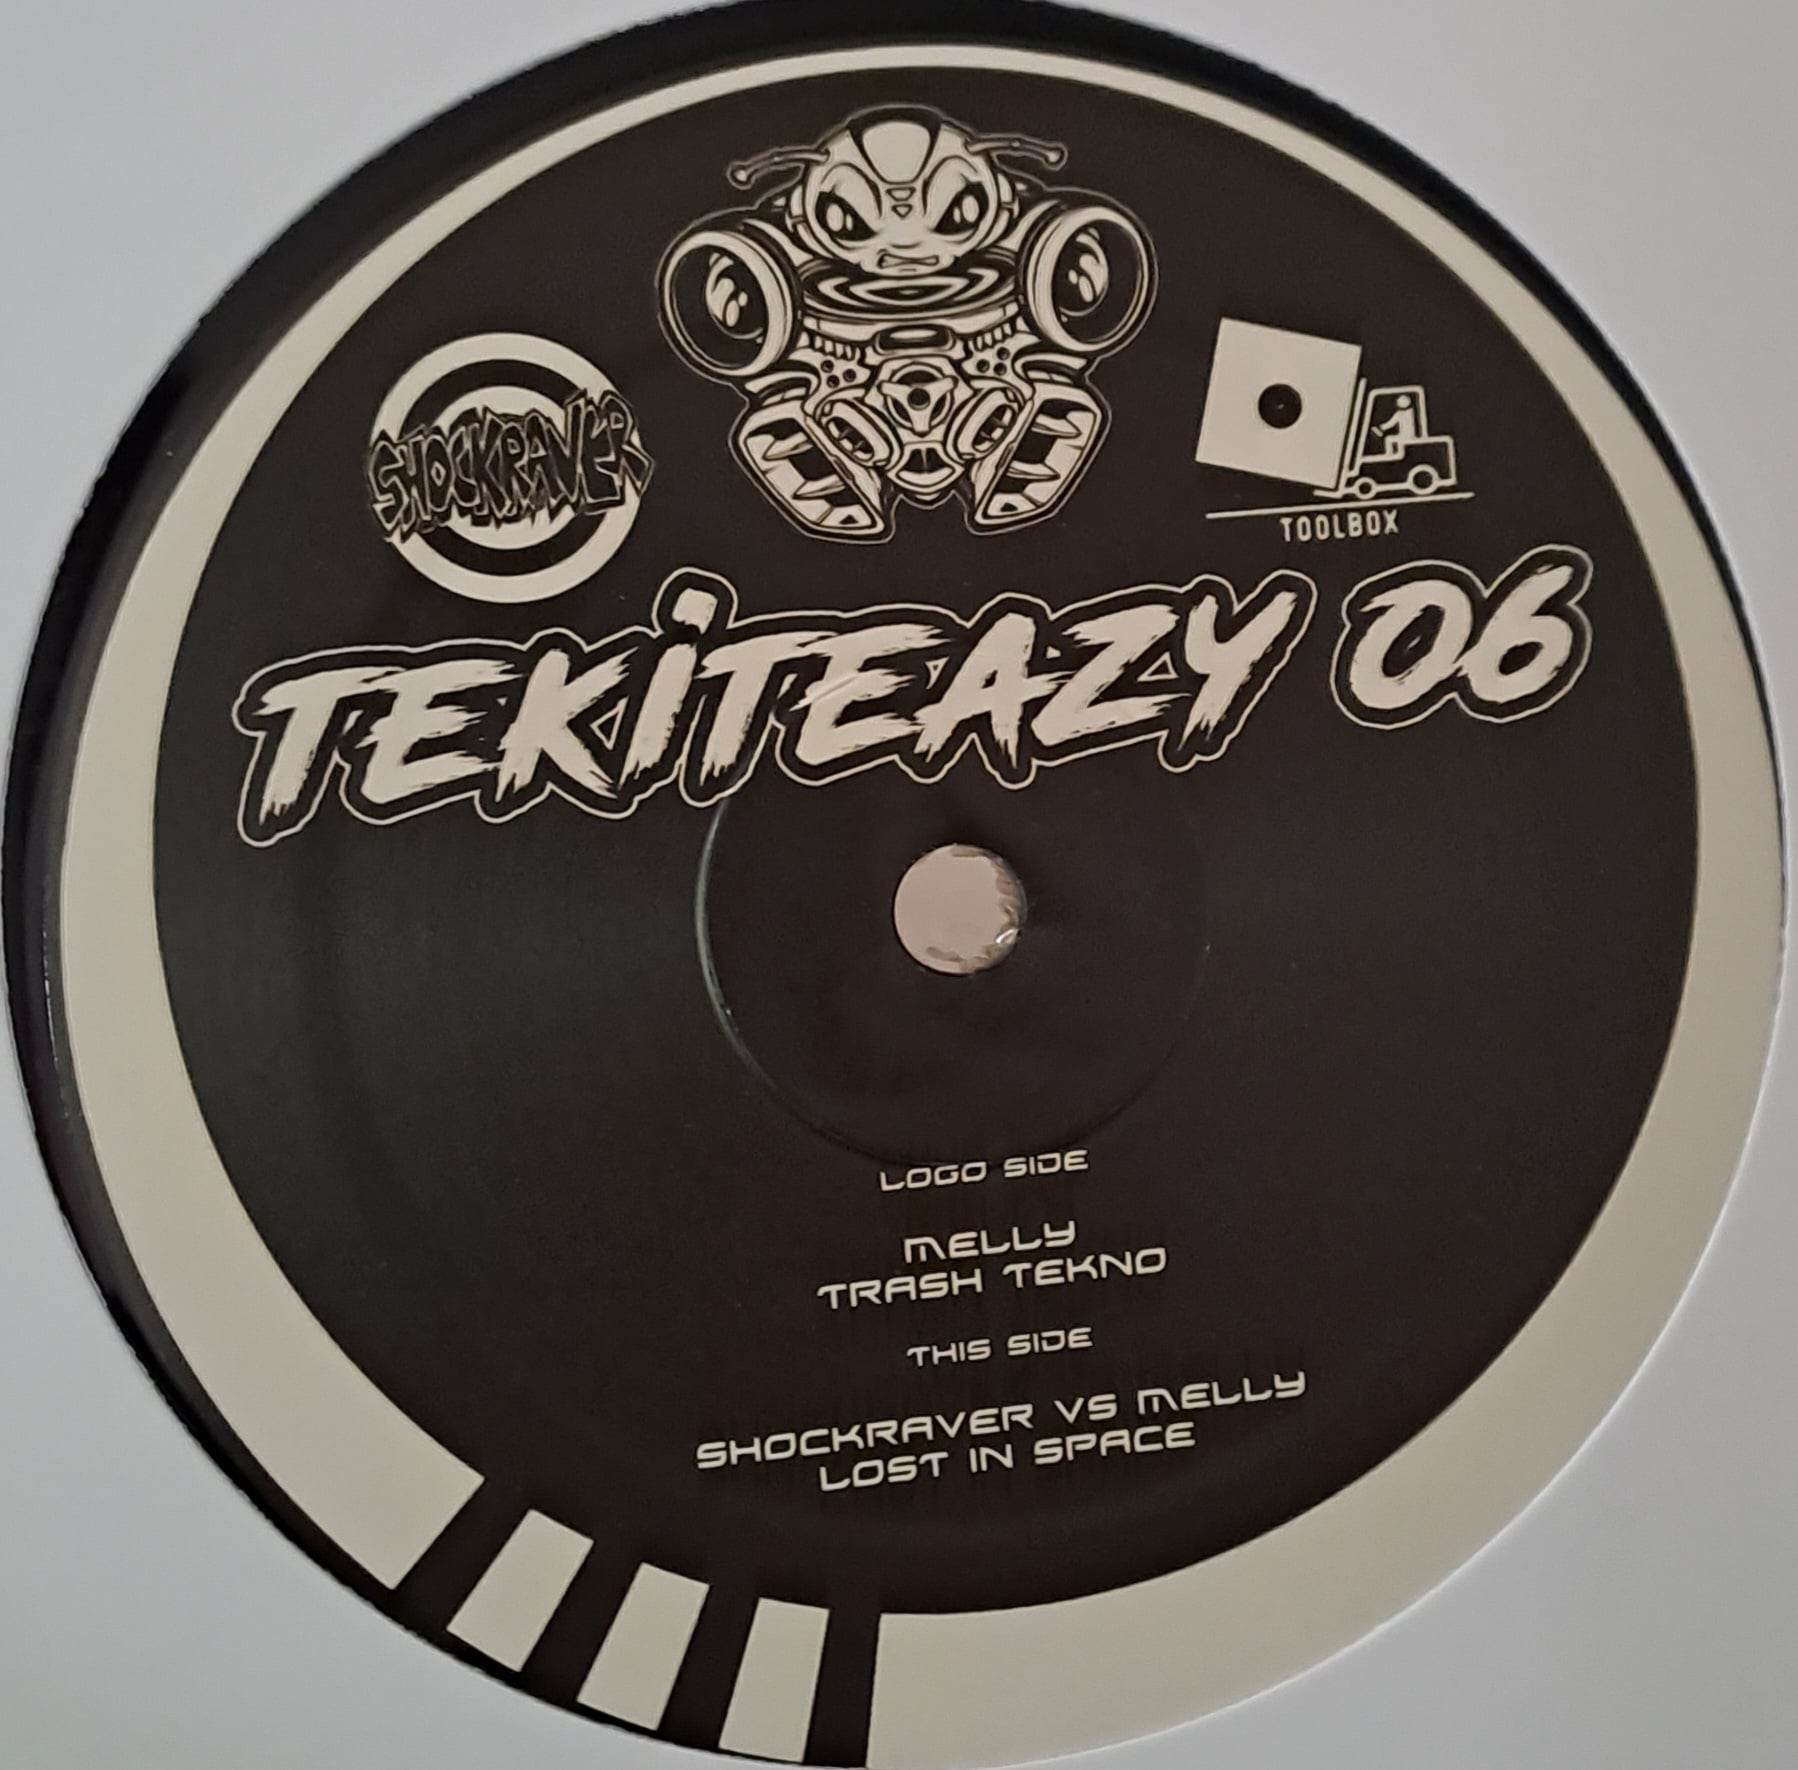 Tekiteazy 06 RP - vinyle tribecore